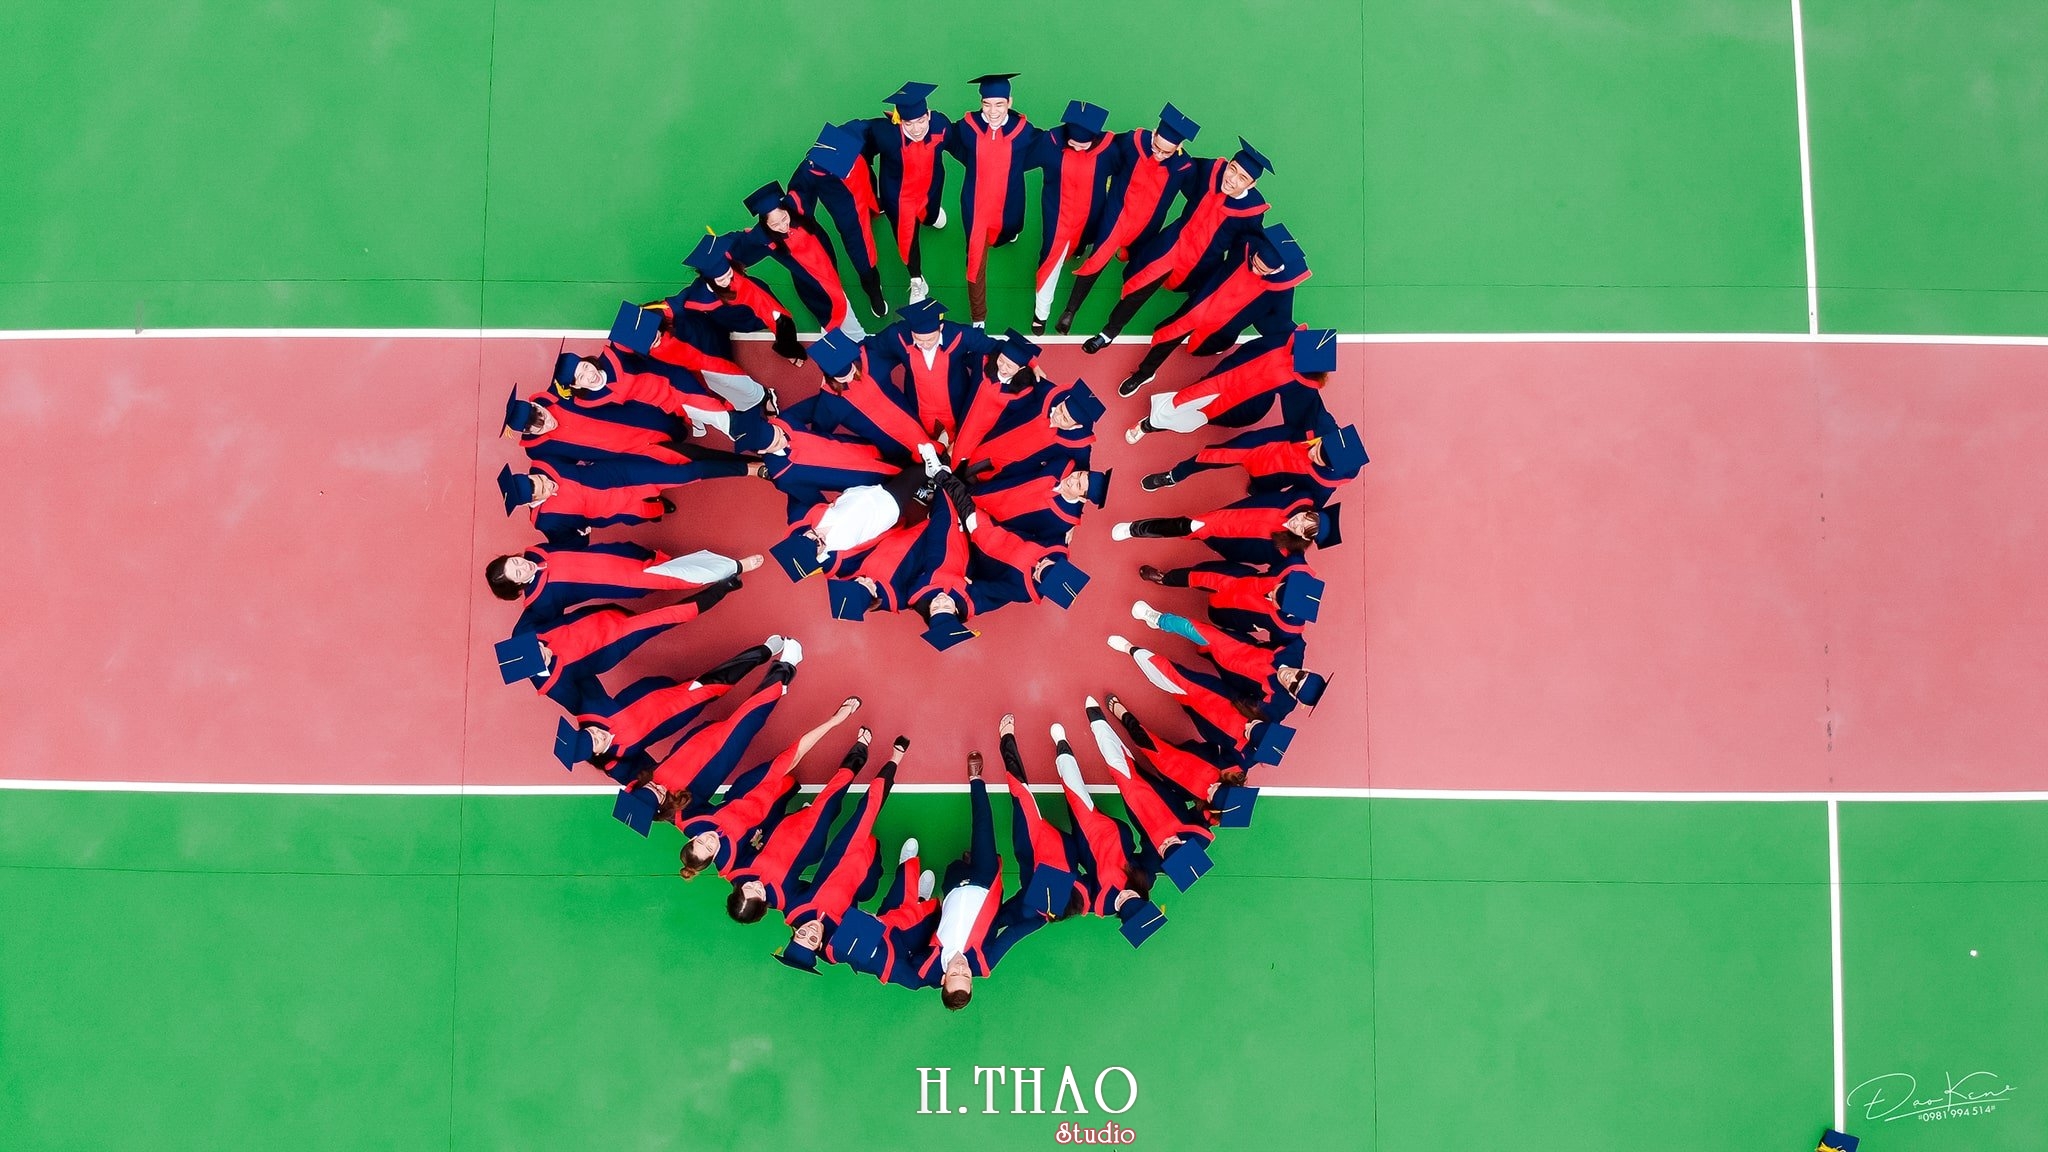 Ky yeu lop 17C7 22 min - Bộ ảnh kỷ yếu "siêu chất" của sinh viên HuTech - HThao Studio